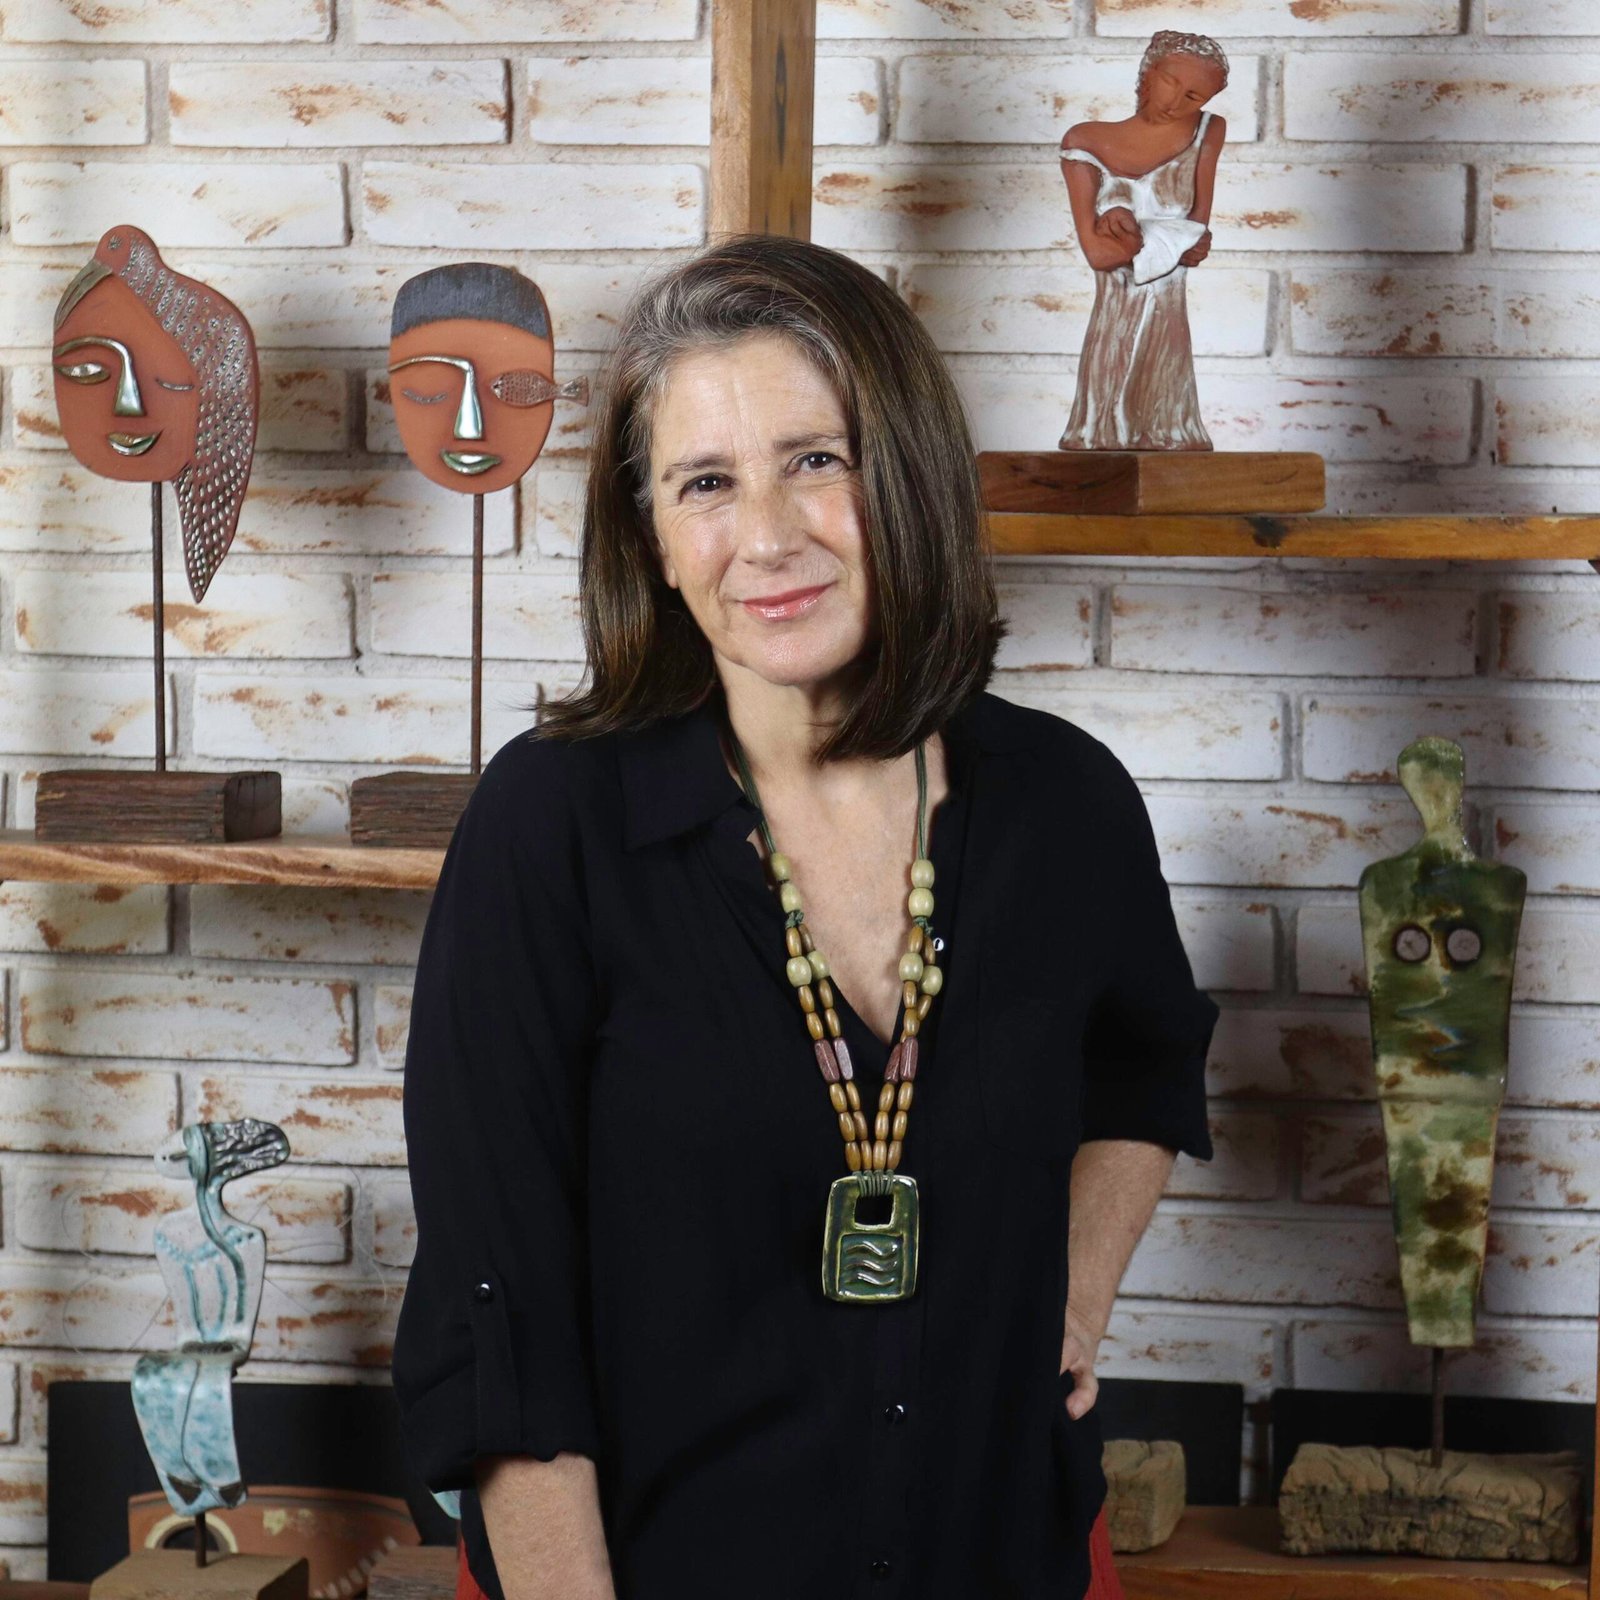 Ceramista argentina Alejandra Dawi apresenta a mostra “Habitare” no Instituto Cervantes de São Paulo